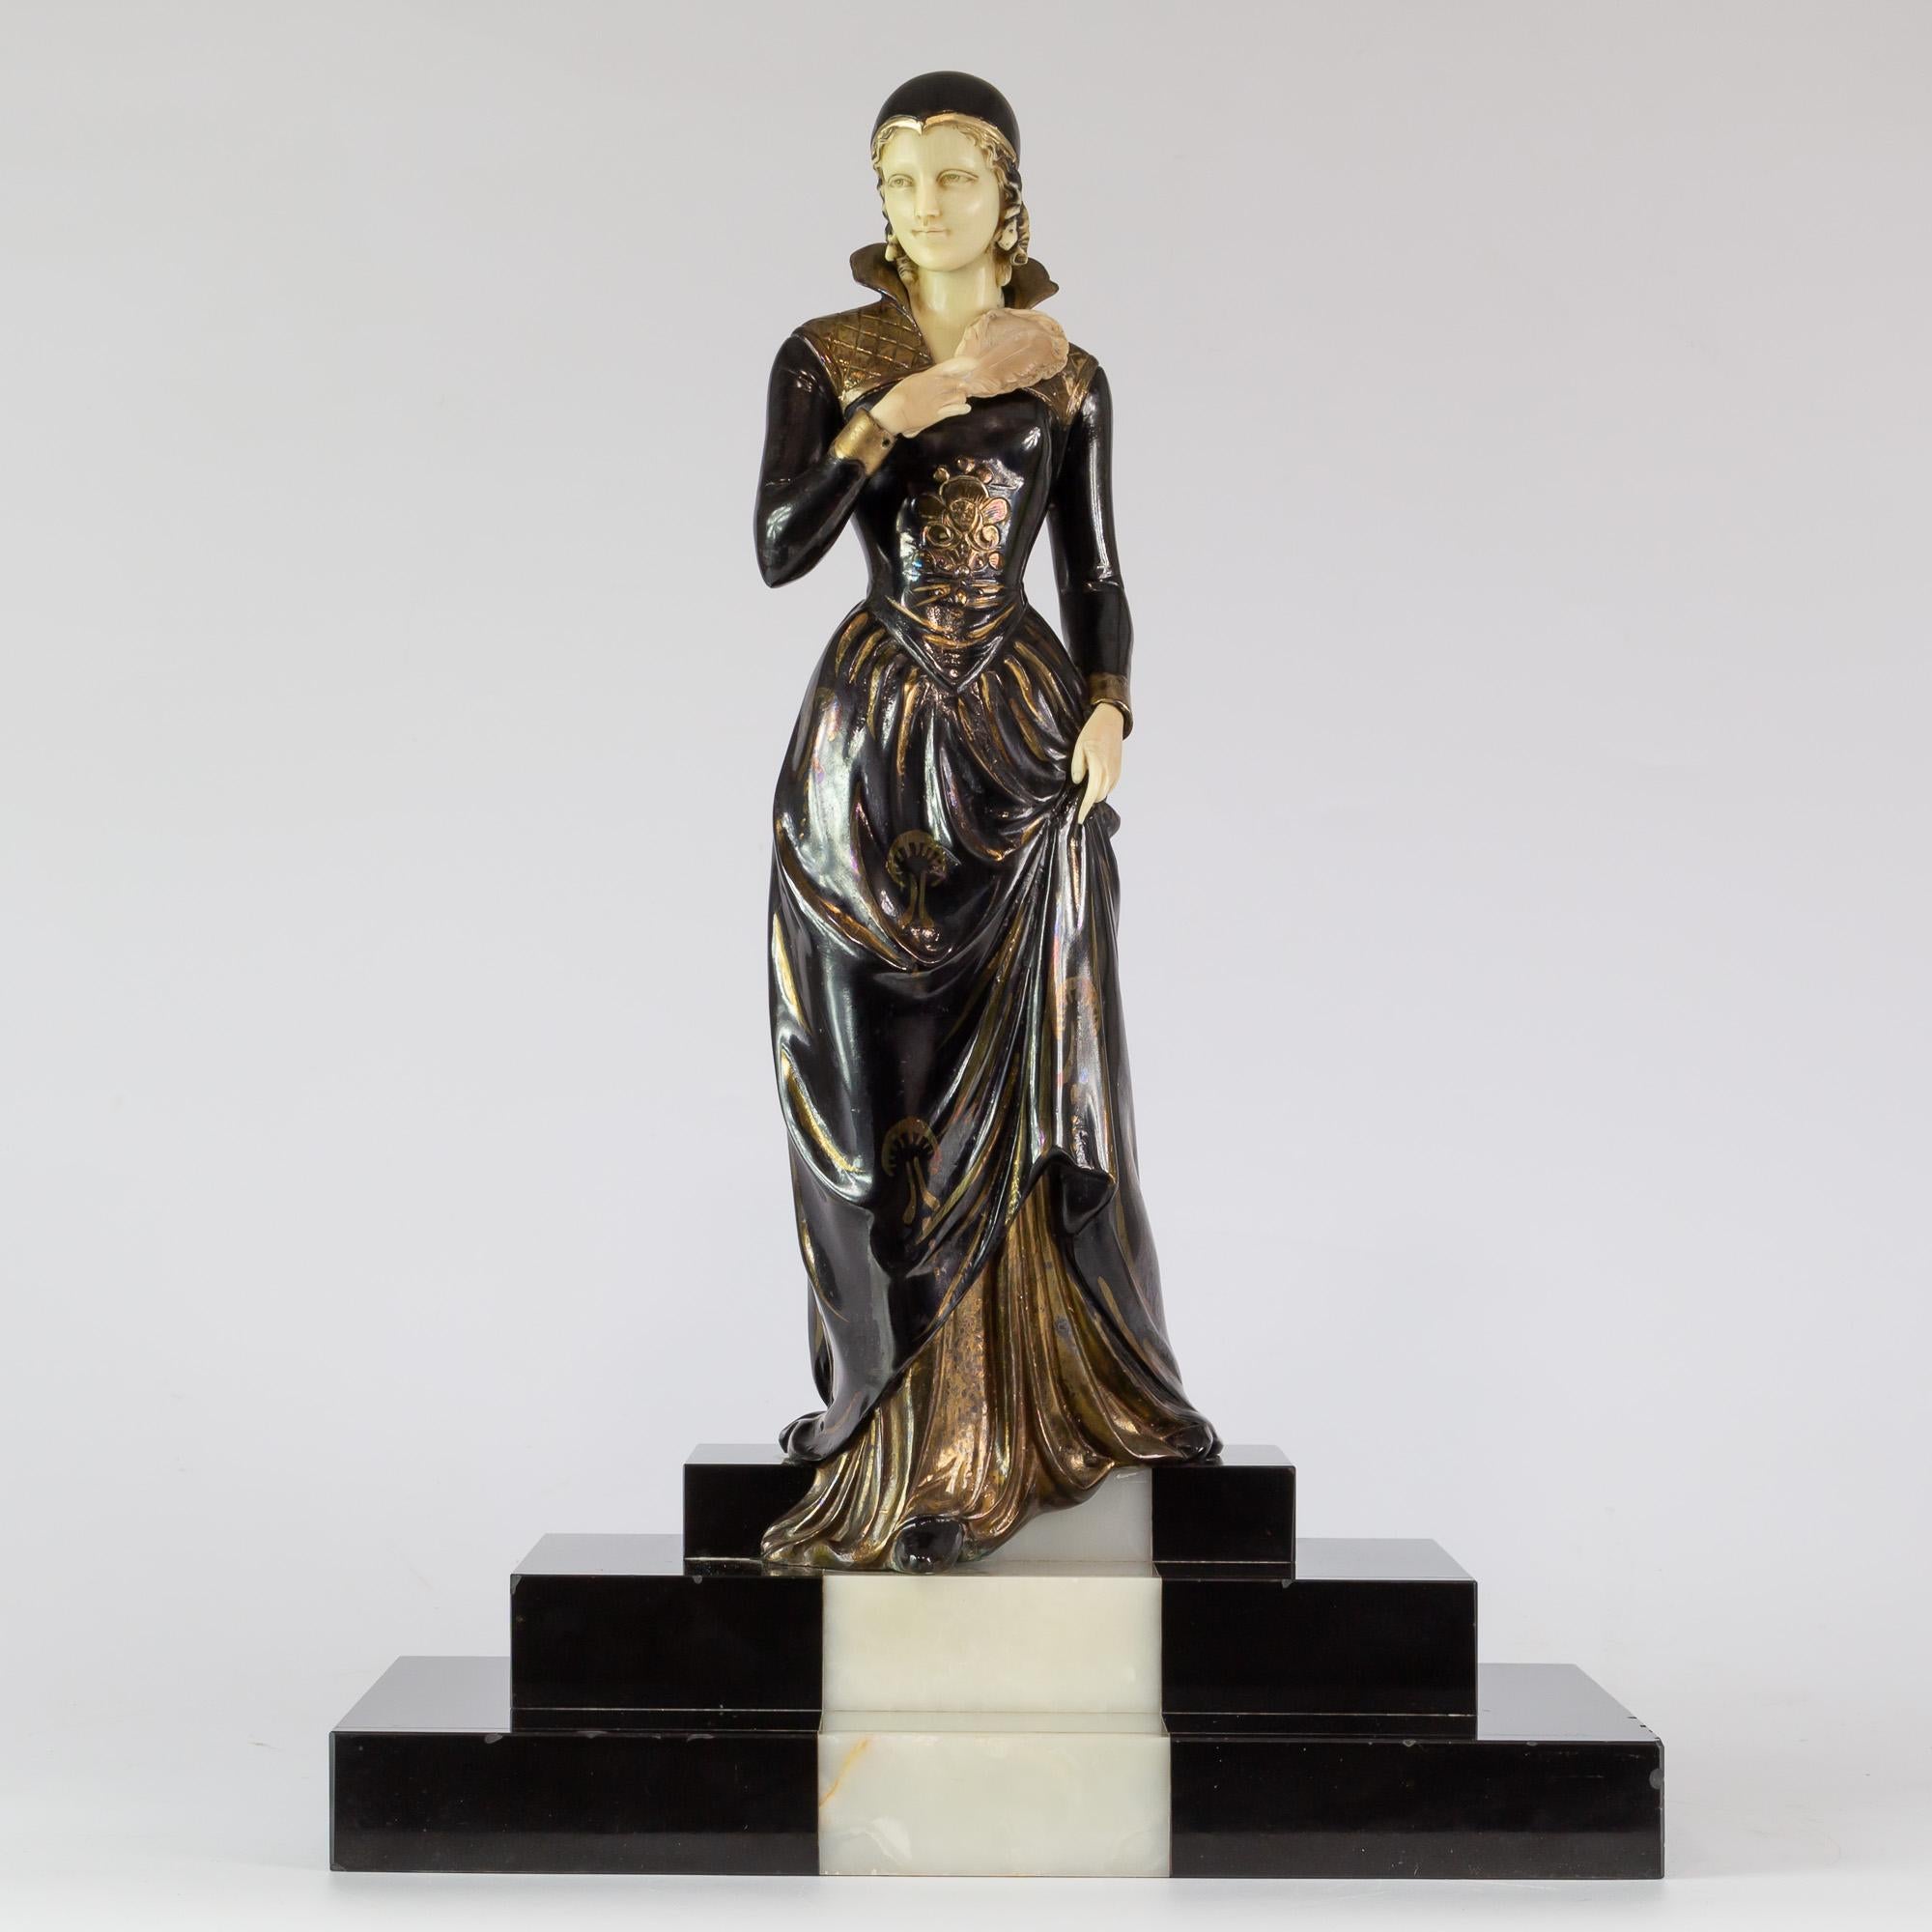 Damenfigur in polychromer und goldener Fonte d'Art mit Kopf und Händen aus Elfenbein (NICHT Elfenbein)
Sockel aus belgischem Marmor und Onyx
Dieses Stück ist auf dem Sockel von 